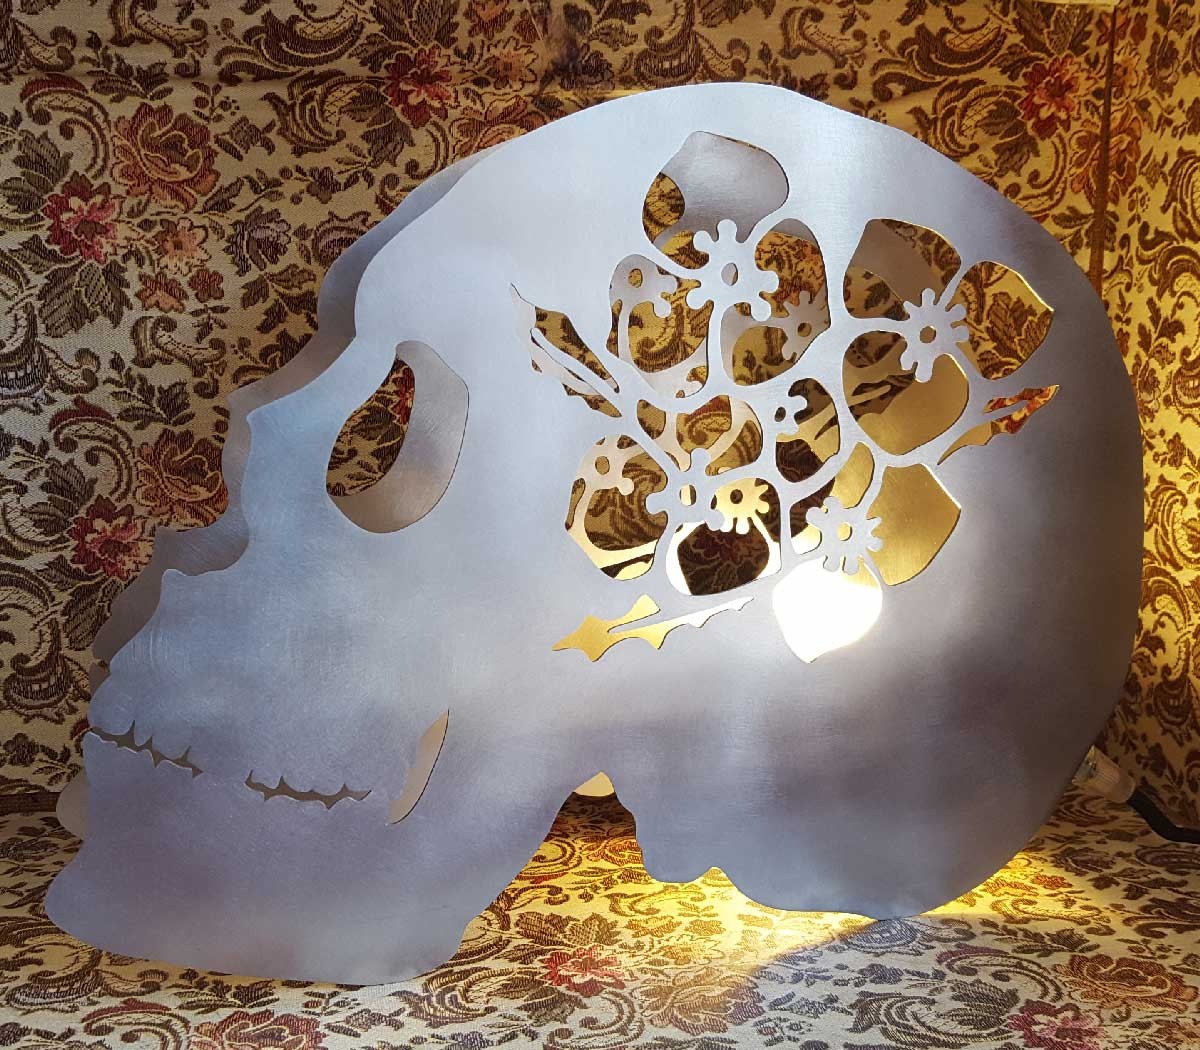 Lampe crâne éclairage ambiance pour décoration inspirée des vanités